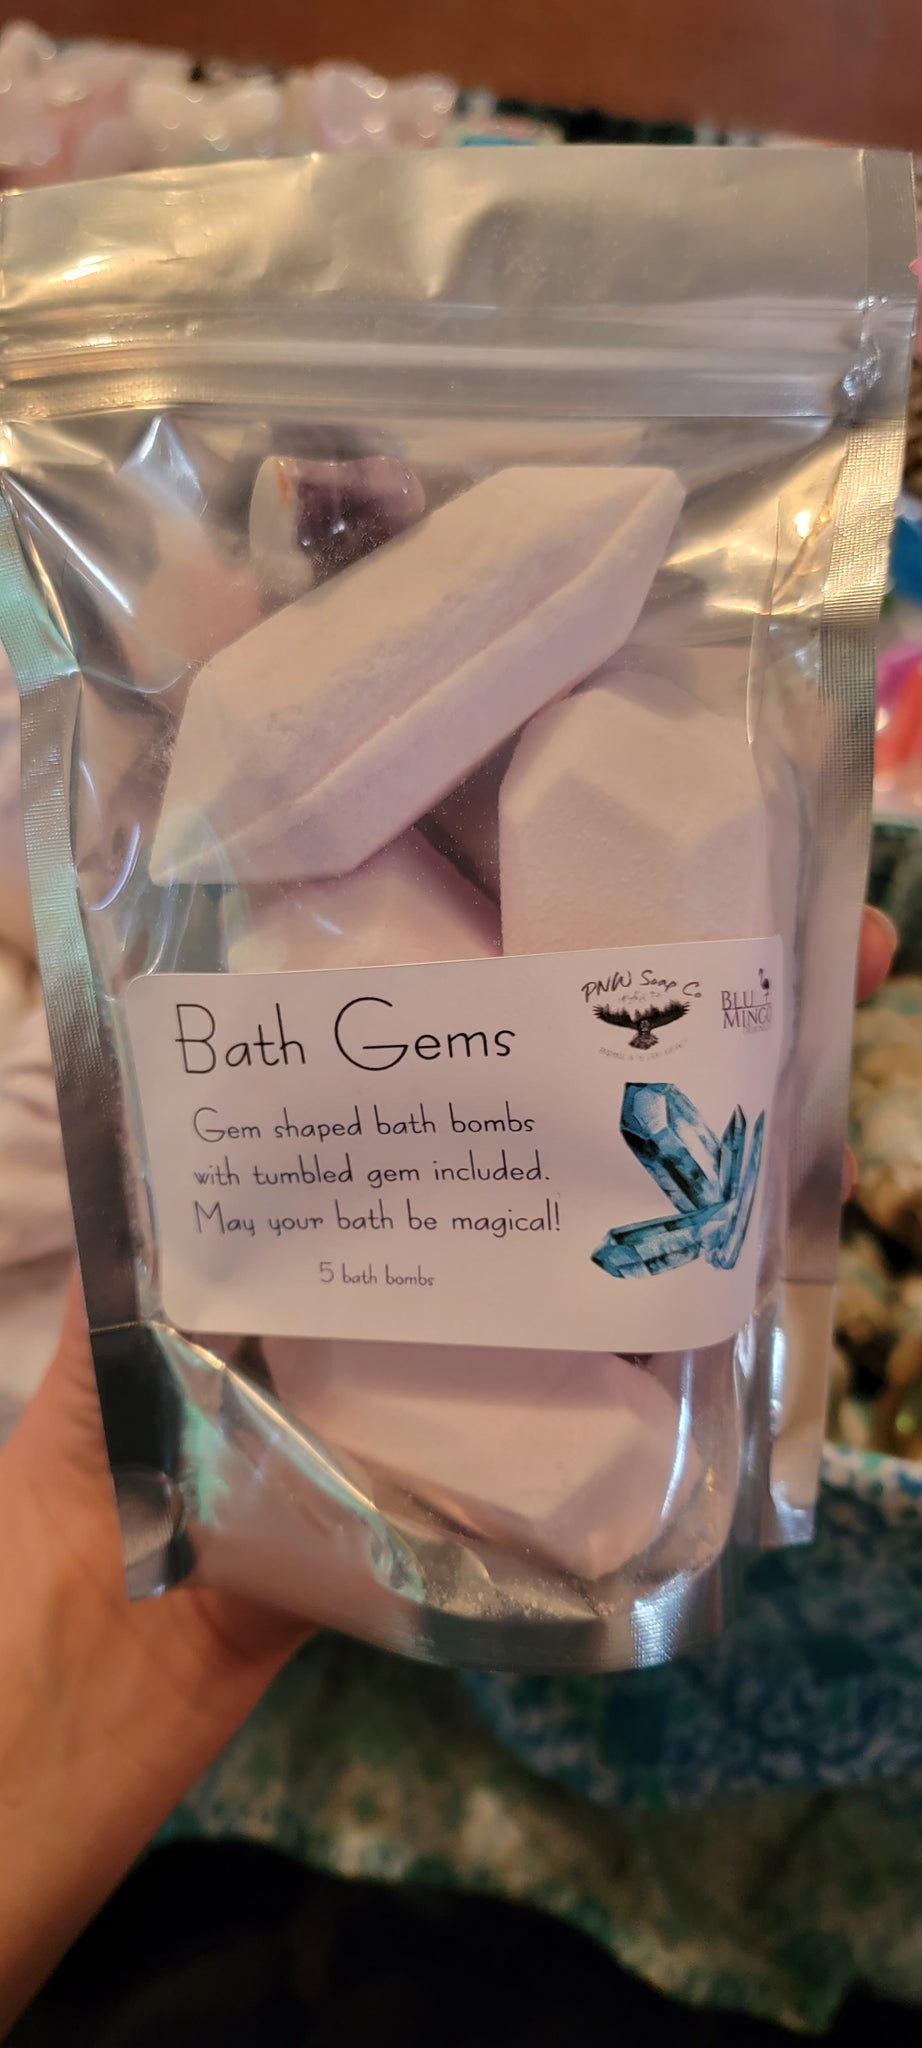 Bath Gems